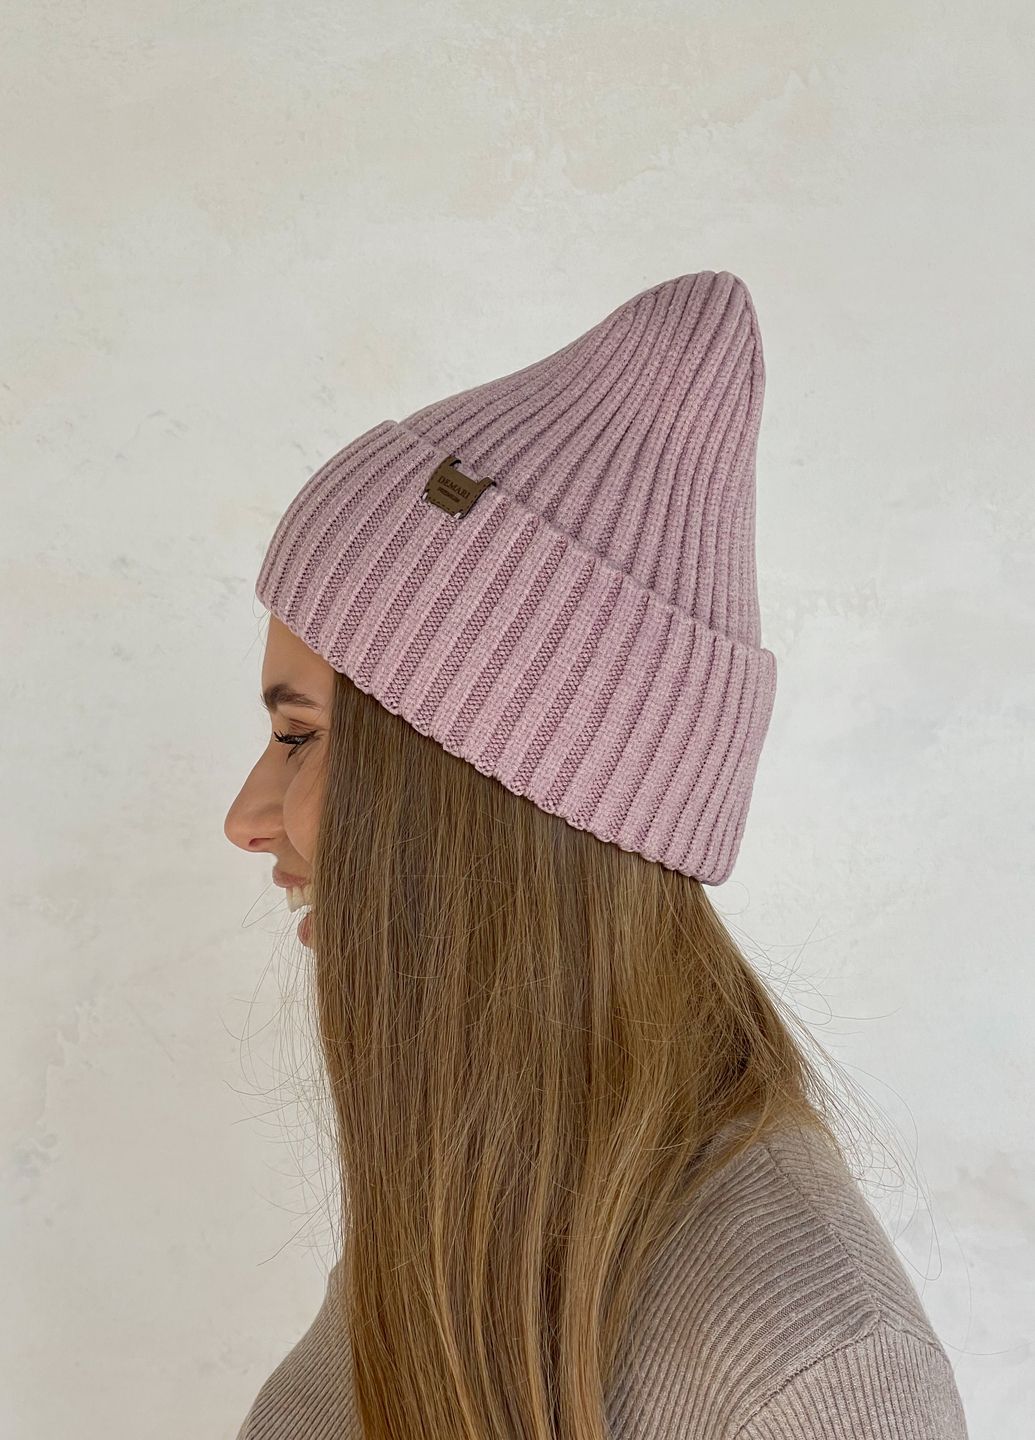 Купить Теплая зимняя кашемировая женская шапка с отворотом на флисовой подкладке DeMari 500121 в интернет-магазине